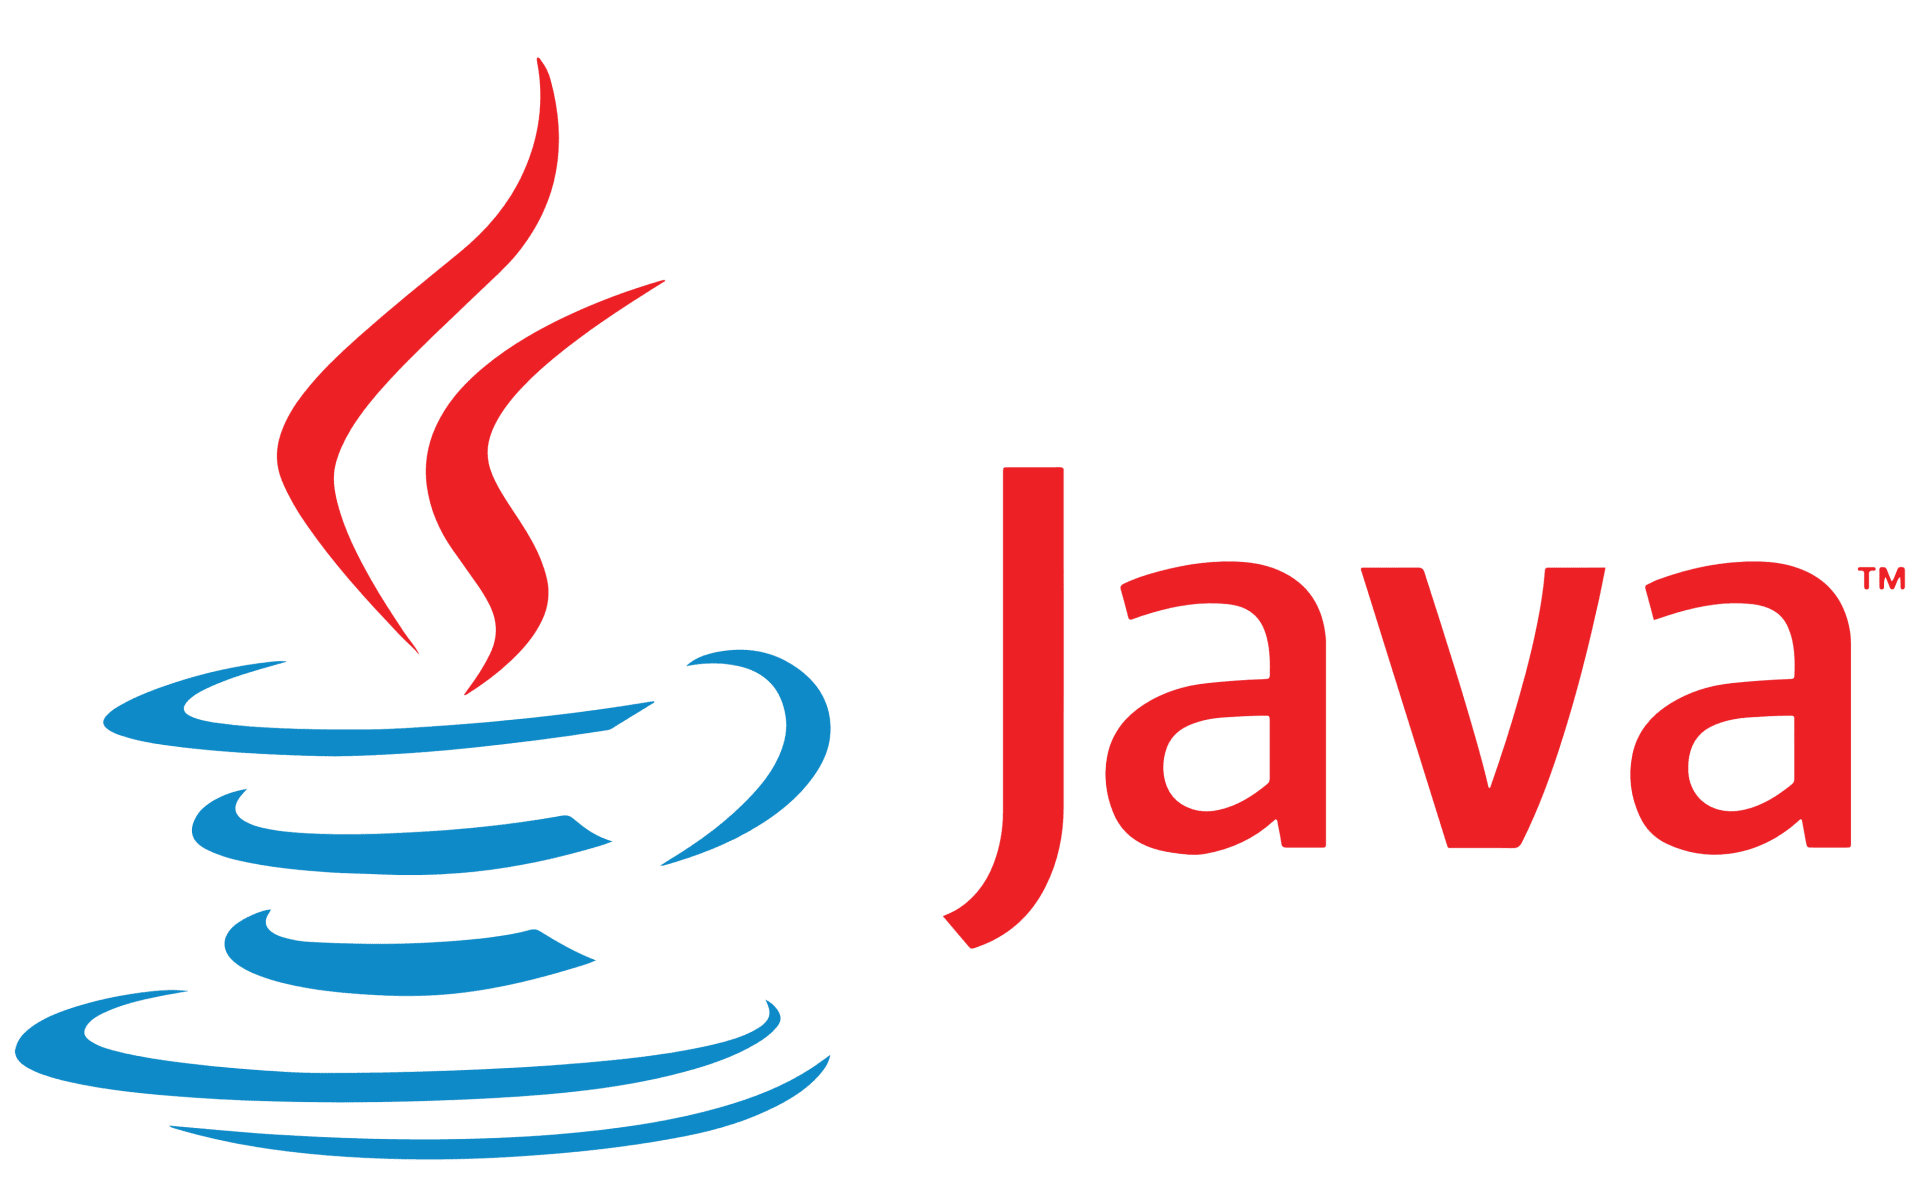 Java logo. JUNIT logo. Java host